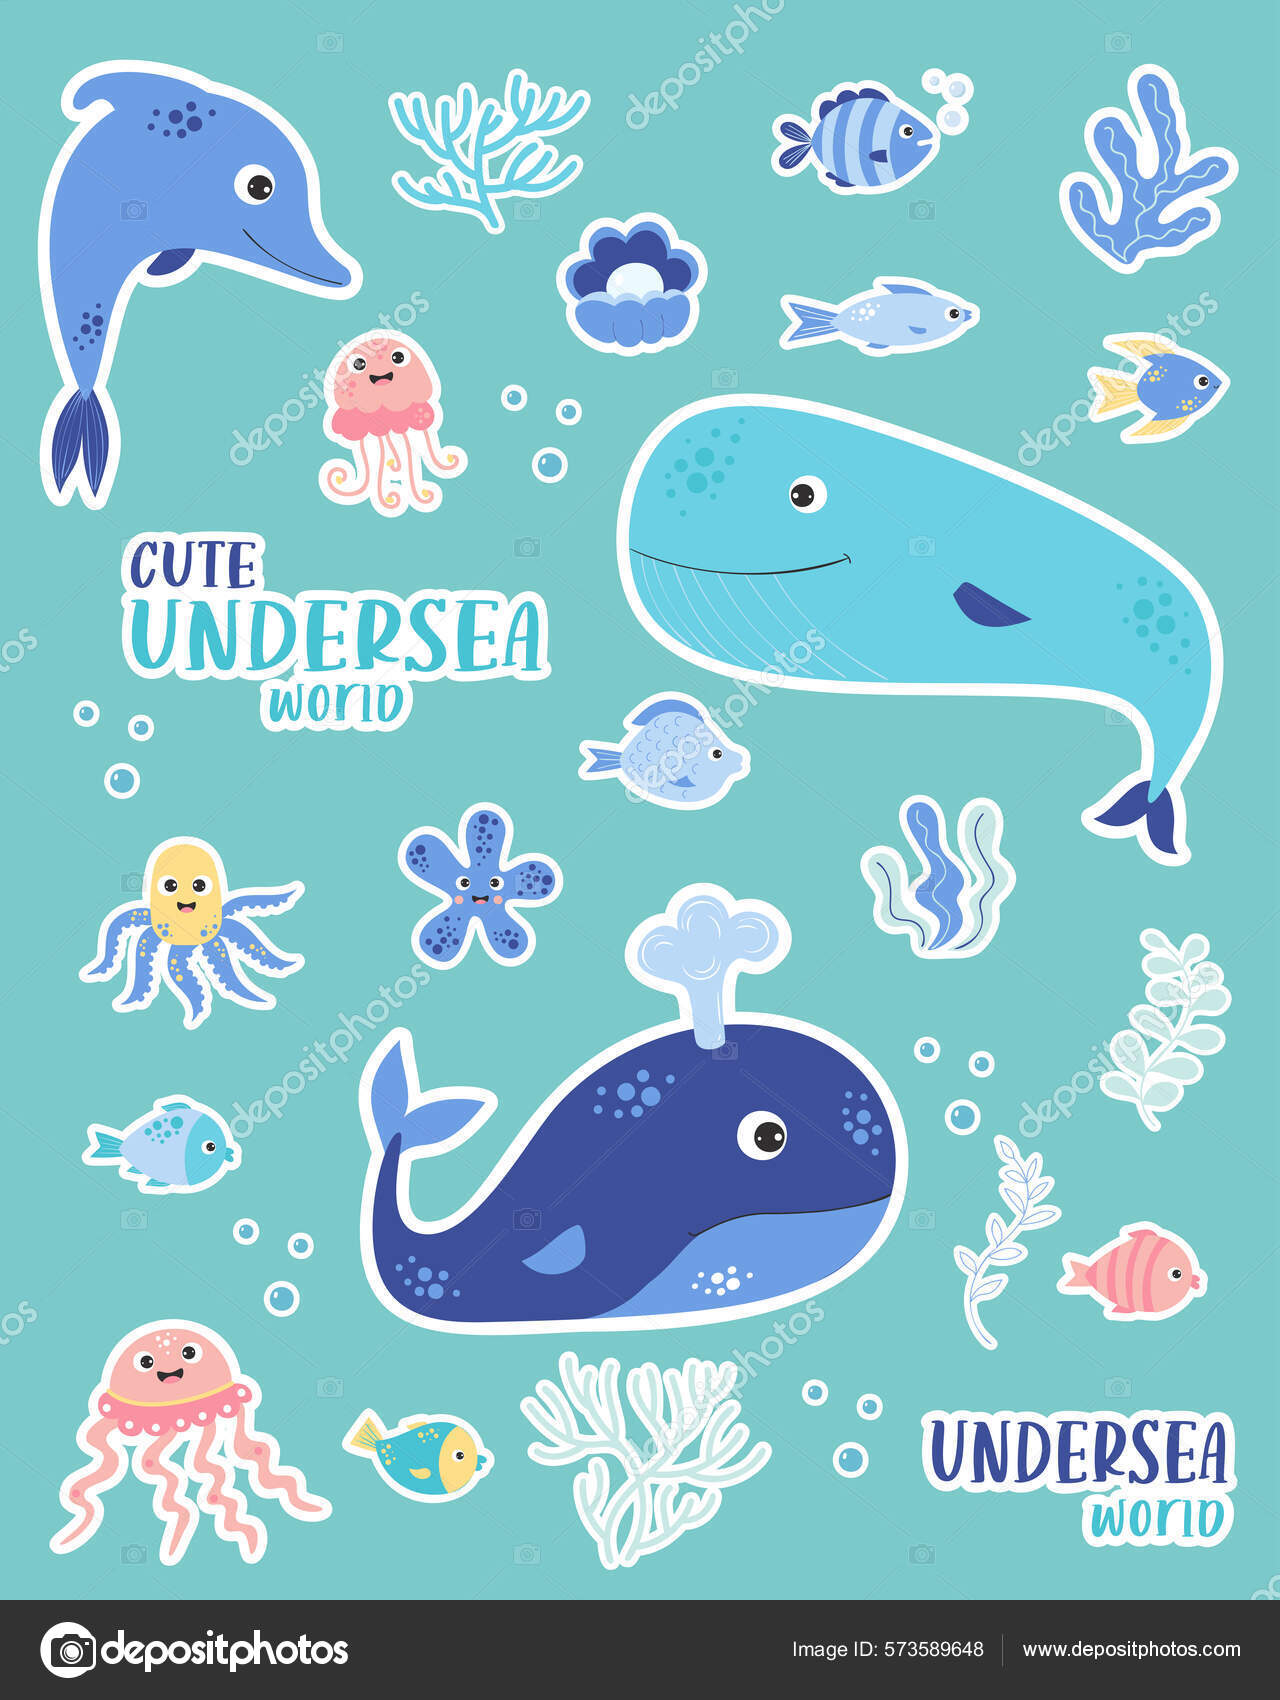 Desenho para colorir isolado de tubarão-baleia para crianças